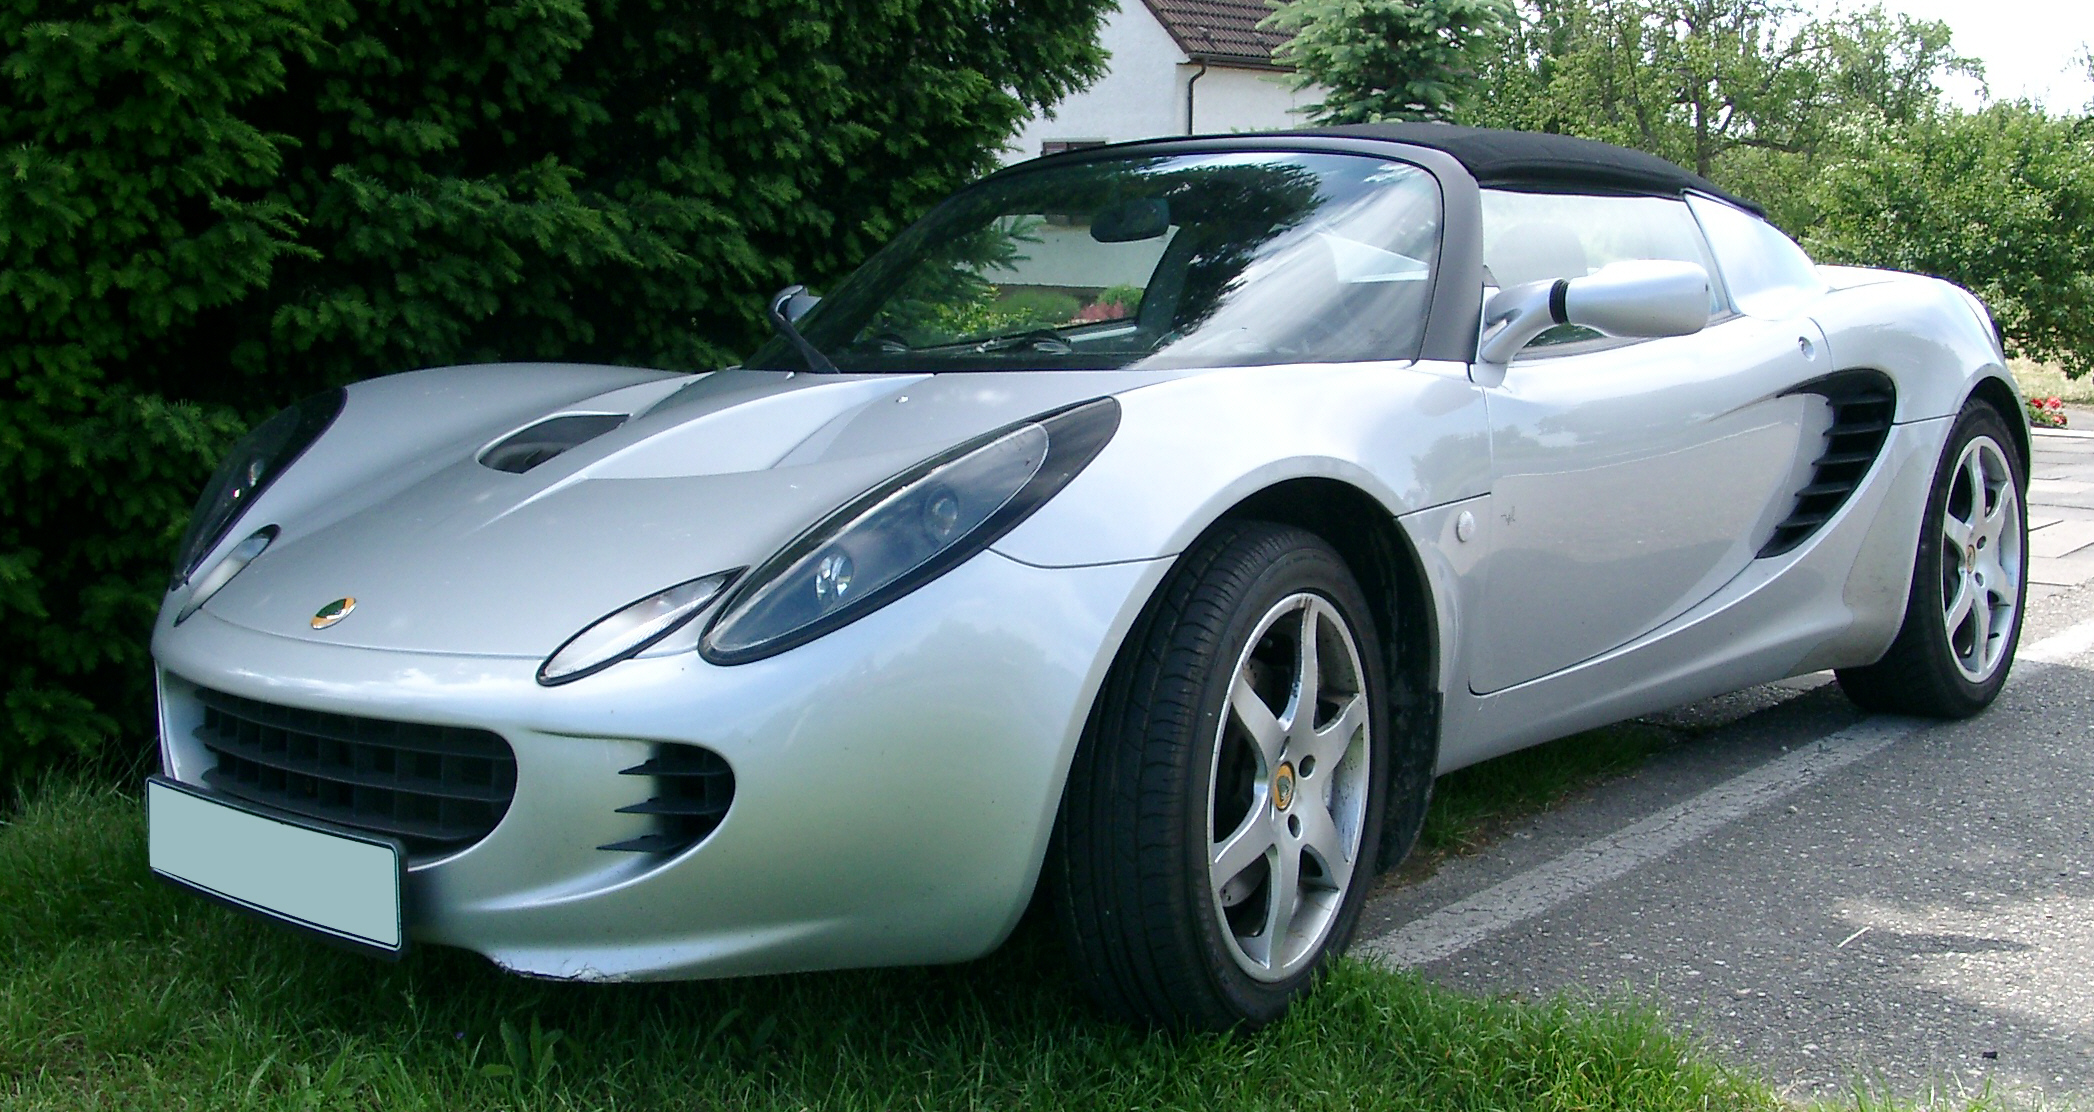 Dossier: Lotus Elise 111R avant 20070520.jpg - Wikimedia Commons